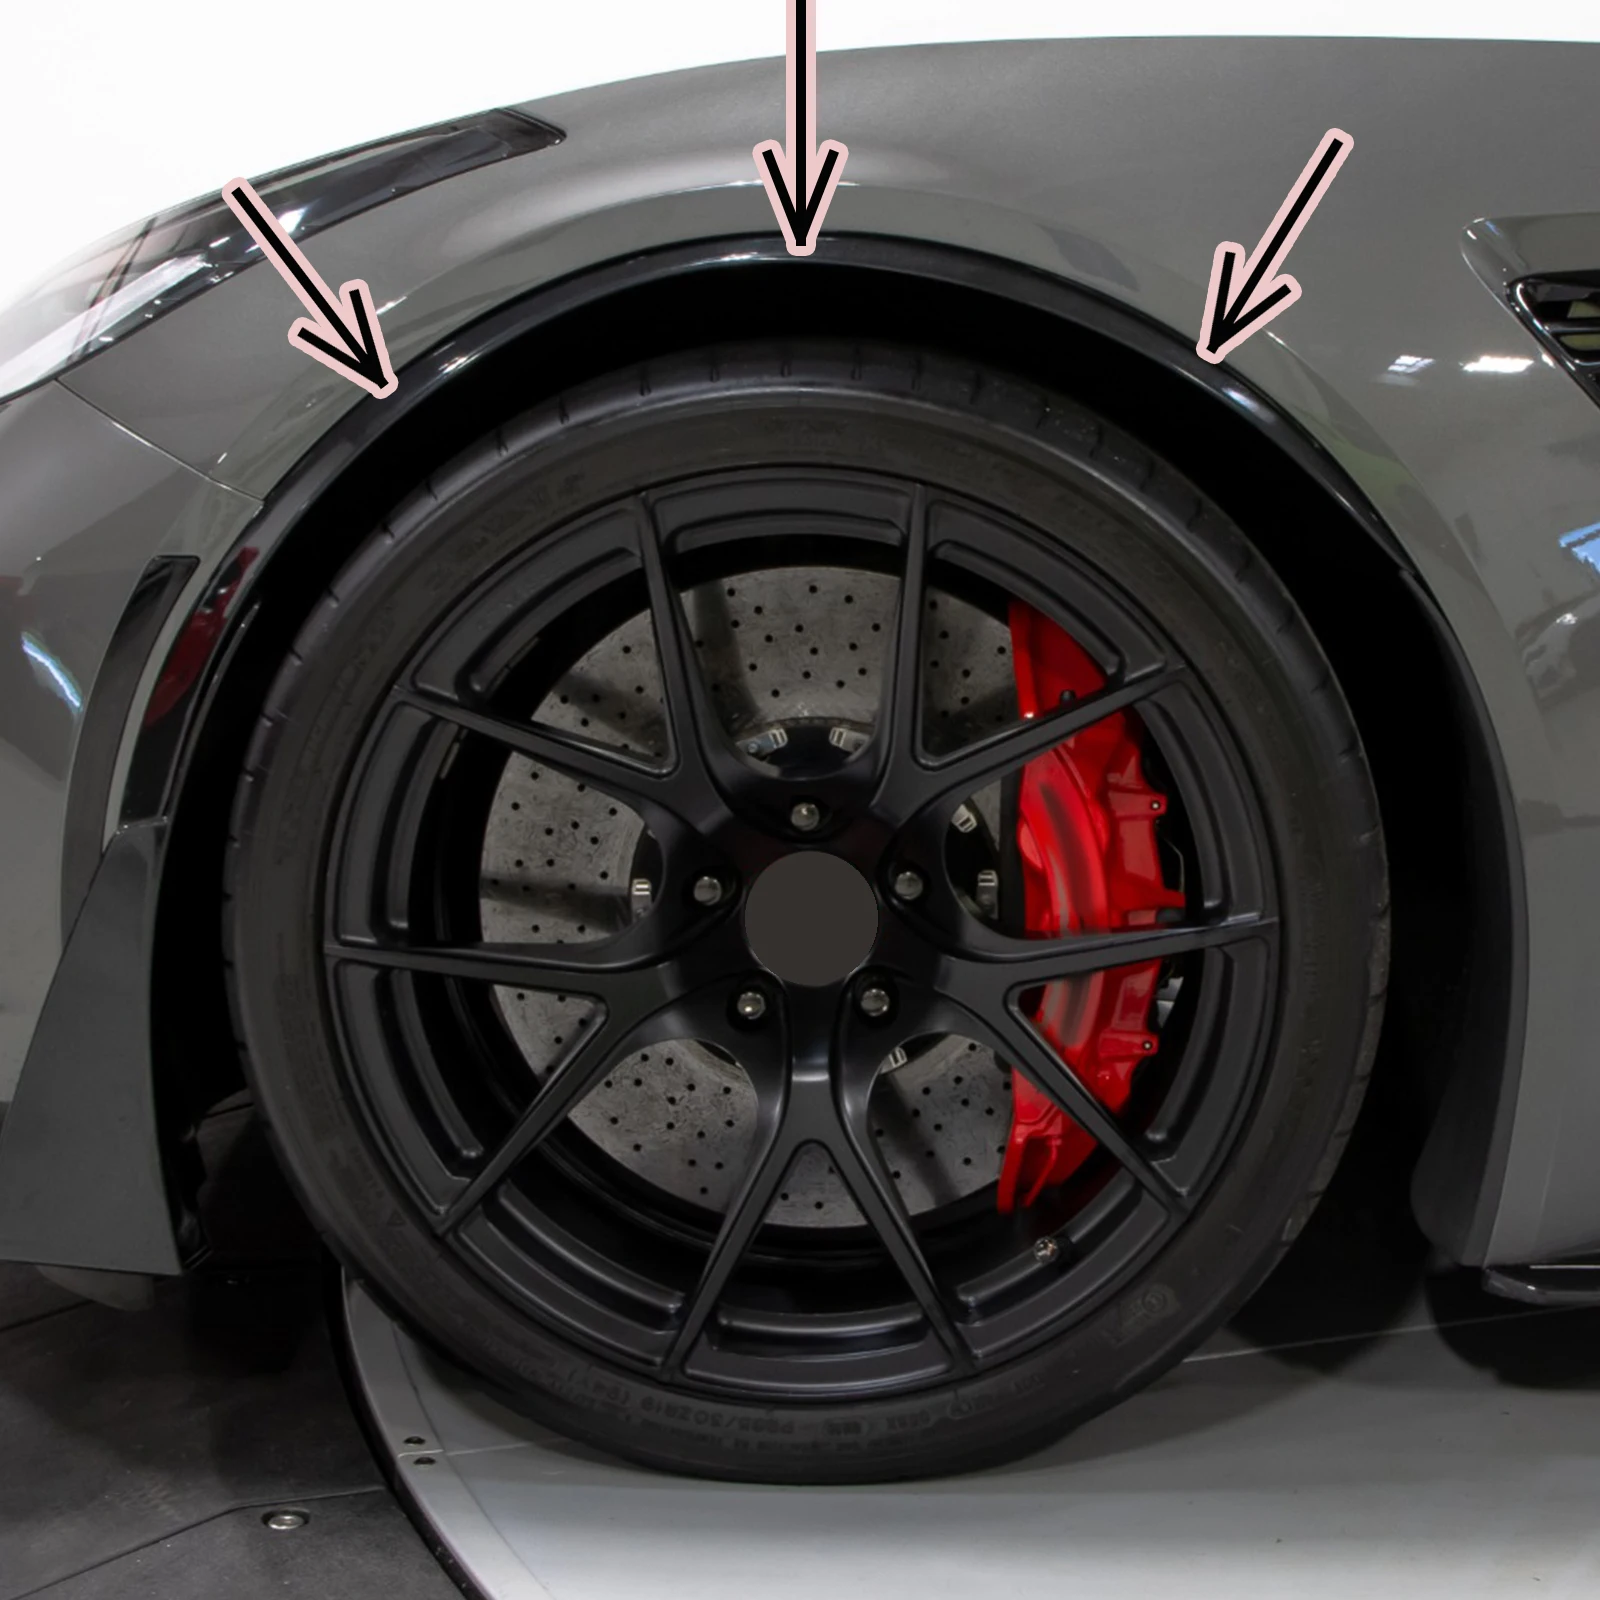 สำหรับ Corvette C7 2014-2019 2Pcs คาร์บอนไฟเบอร์เคลือบเงาสีดำรถล้อหน้า Fender Arches Molding flares GM สไตล์